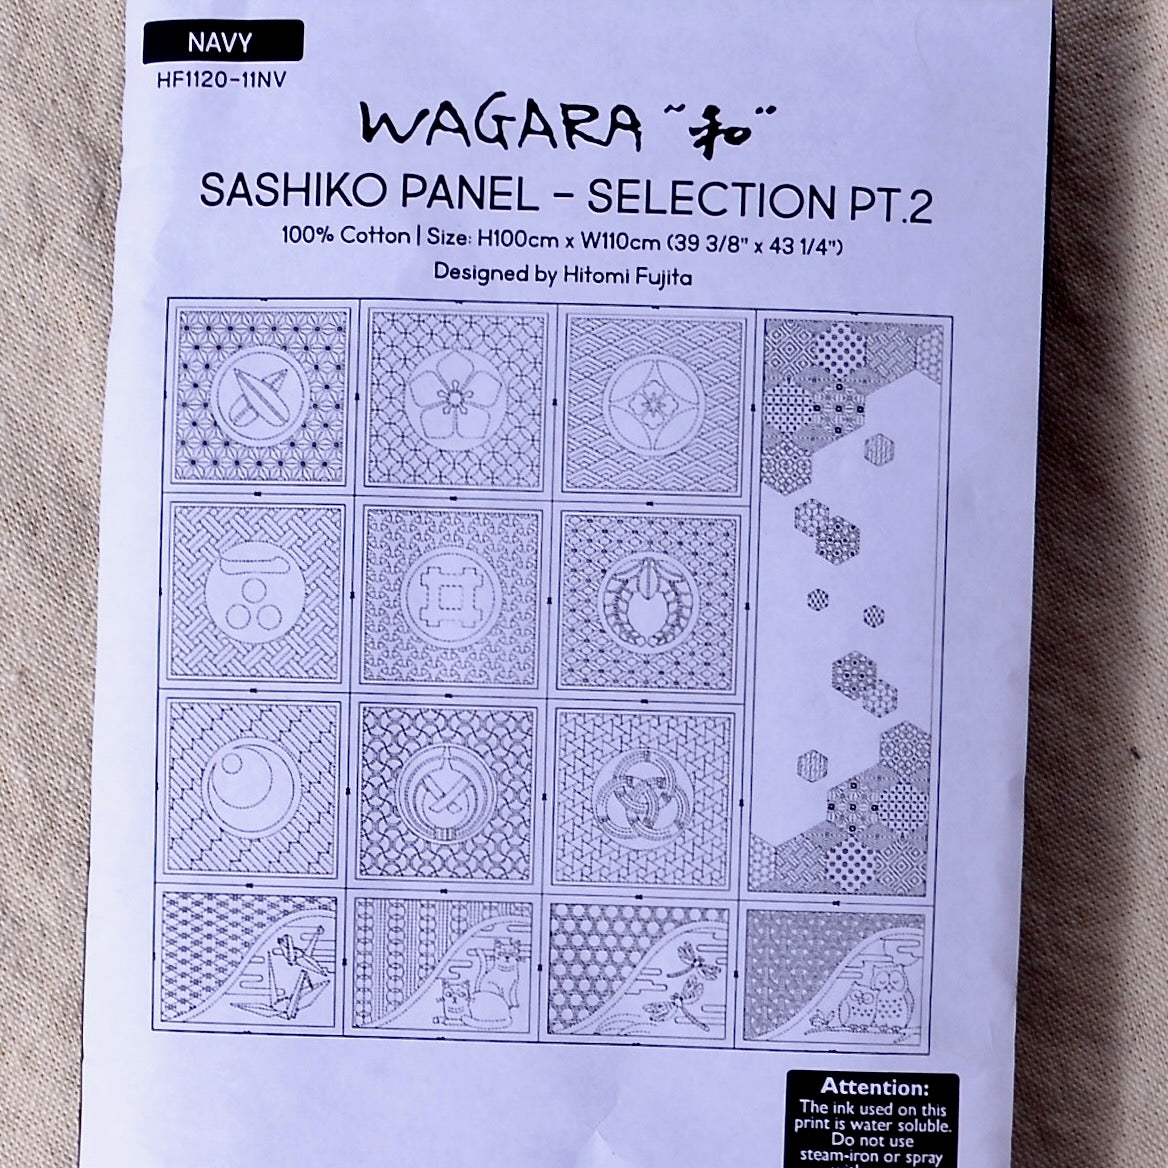 Wagara Sashiko Panel - Selection PT. 2